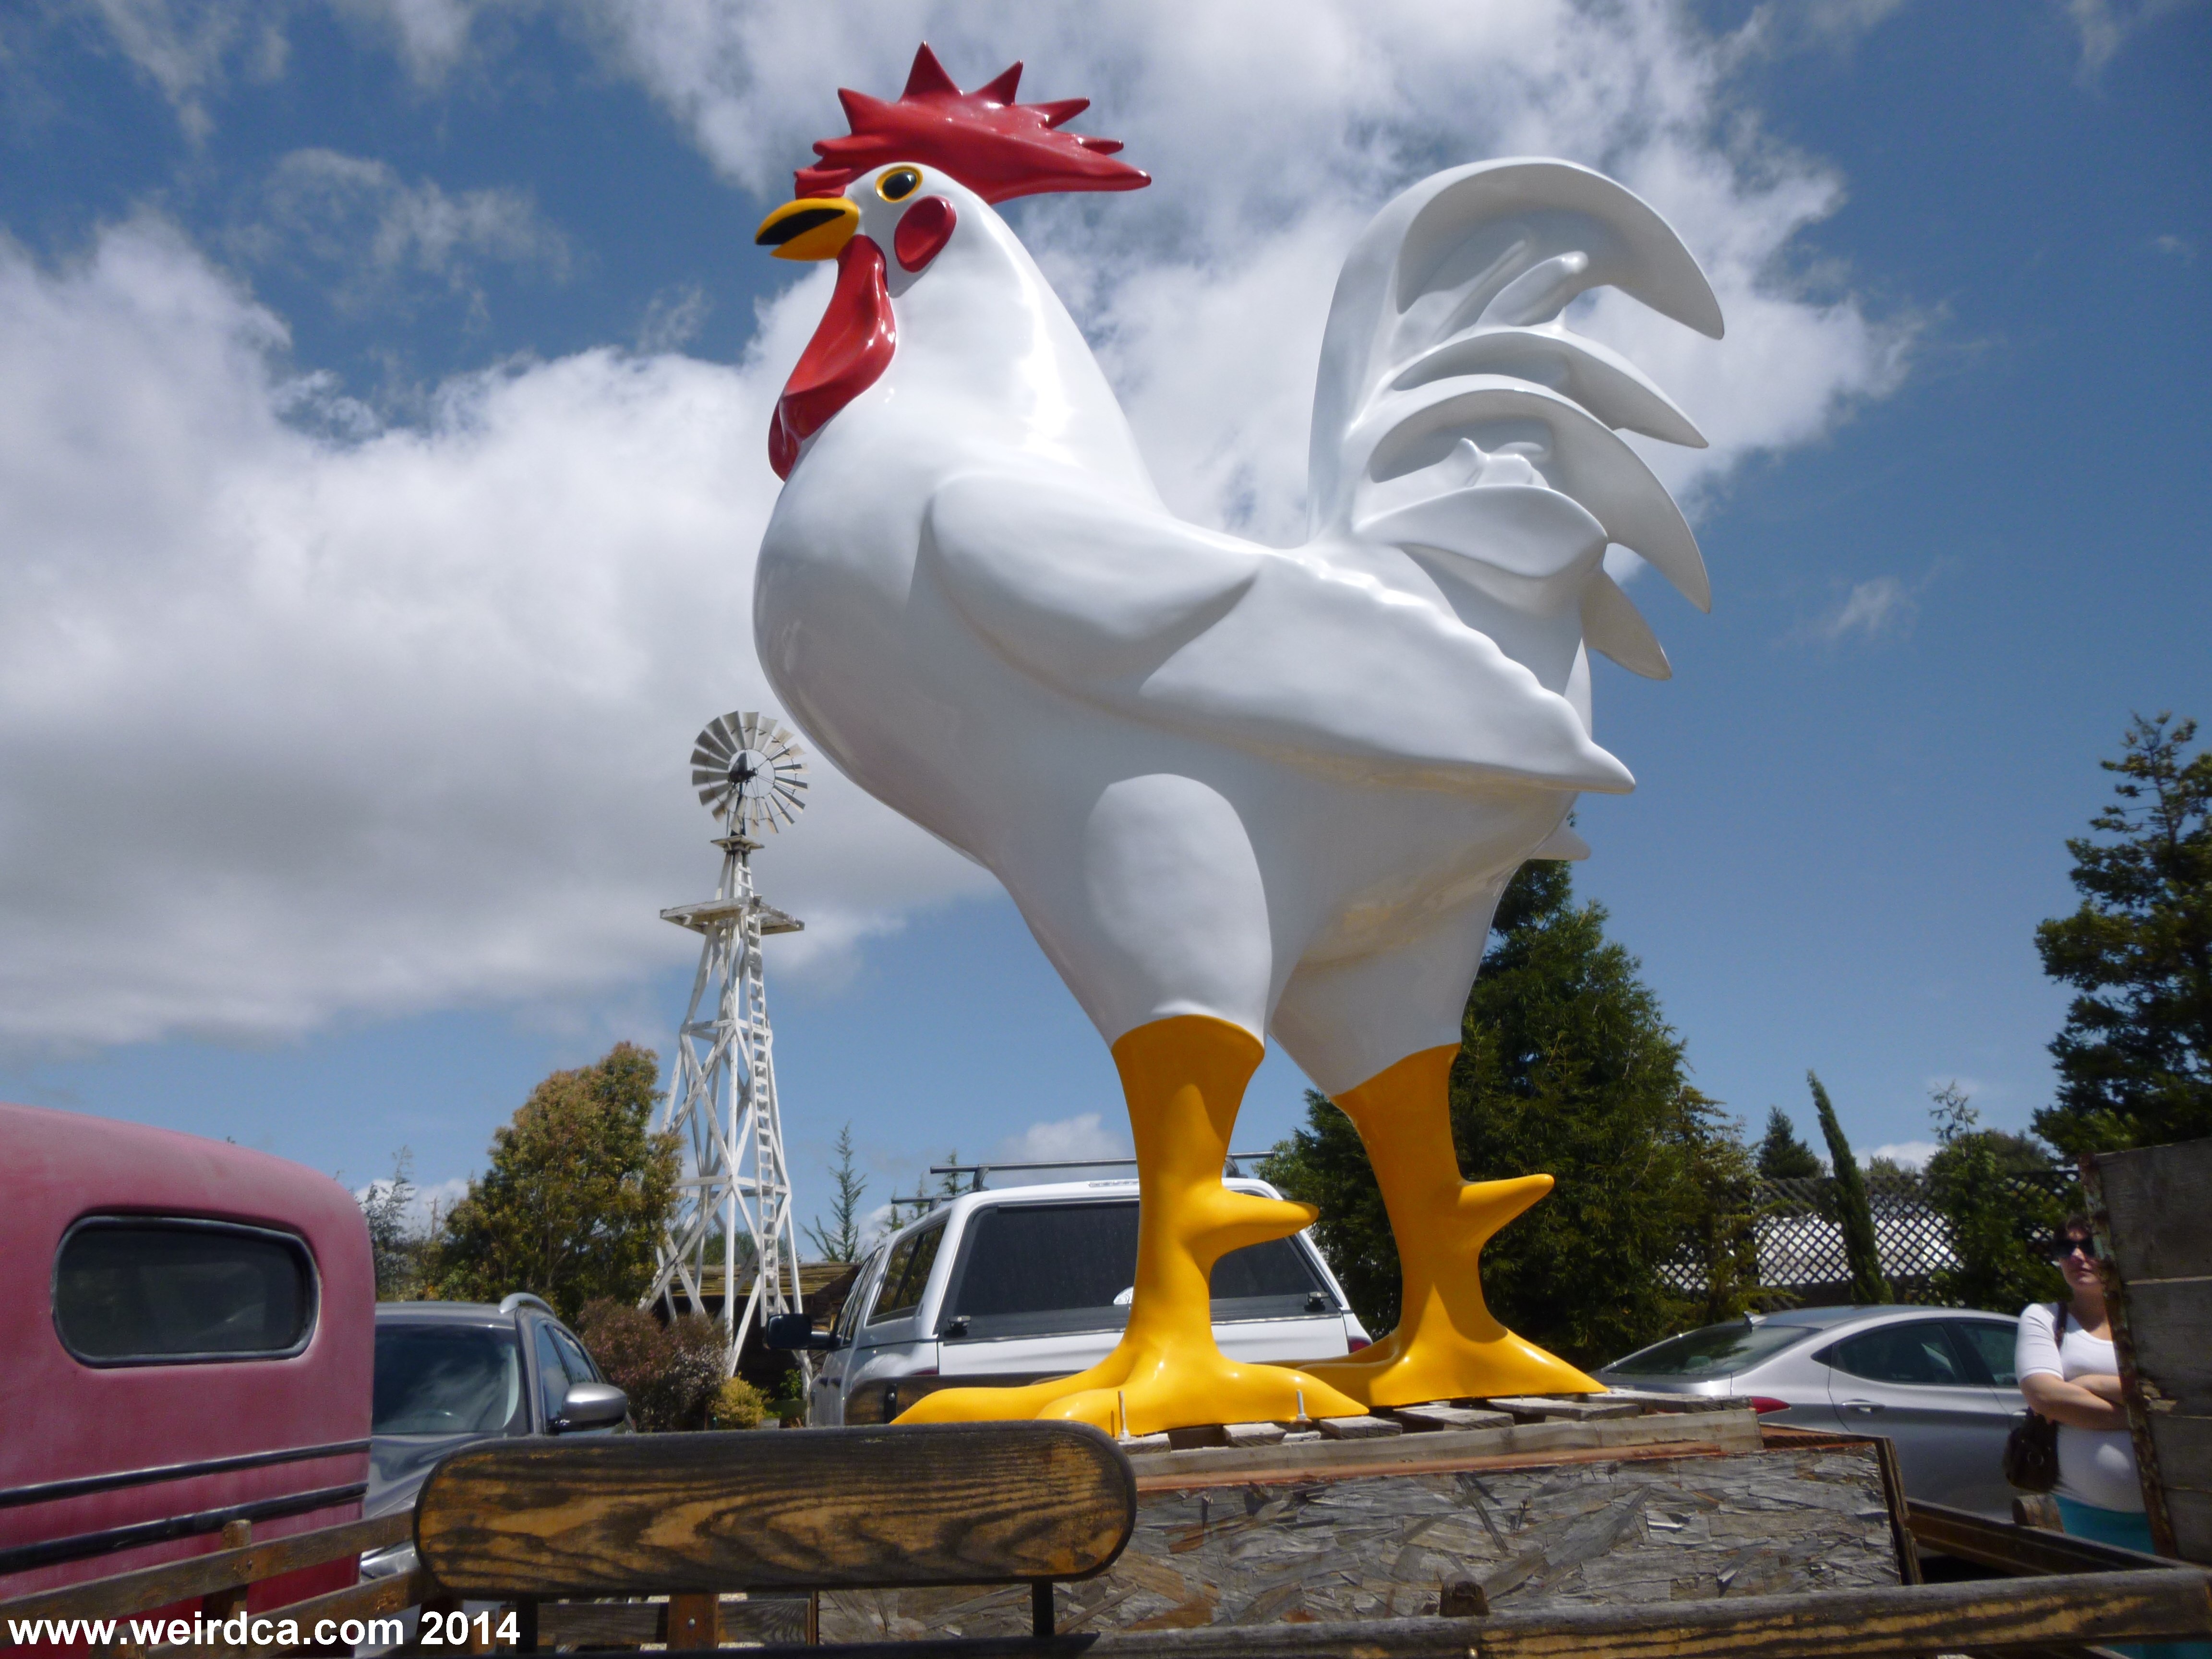 International Fiberglass also made Giant Chickens!